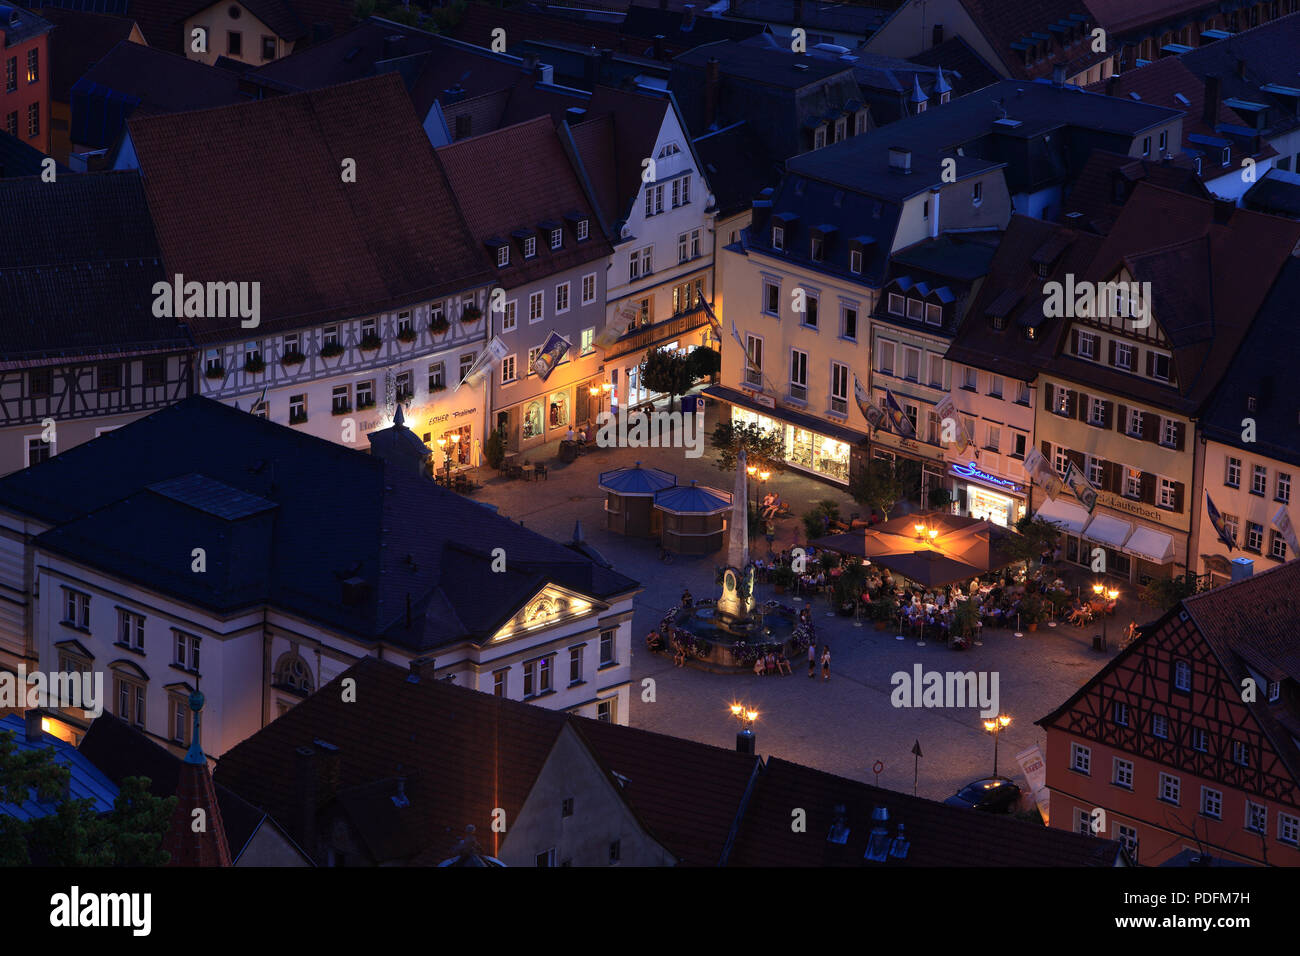 Marktplatz am Abend, Kulmbach, Oberfranken, Bayern, Deutschland Stockfoto